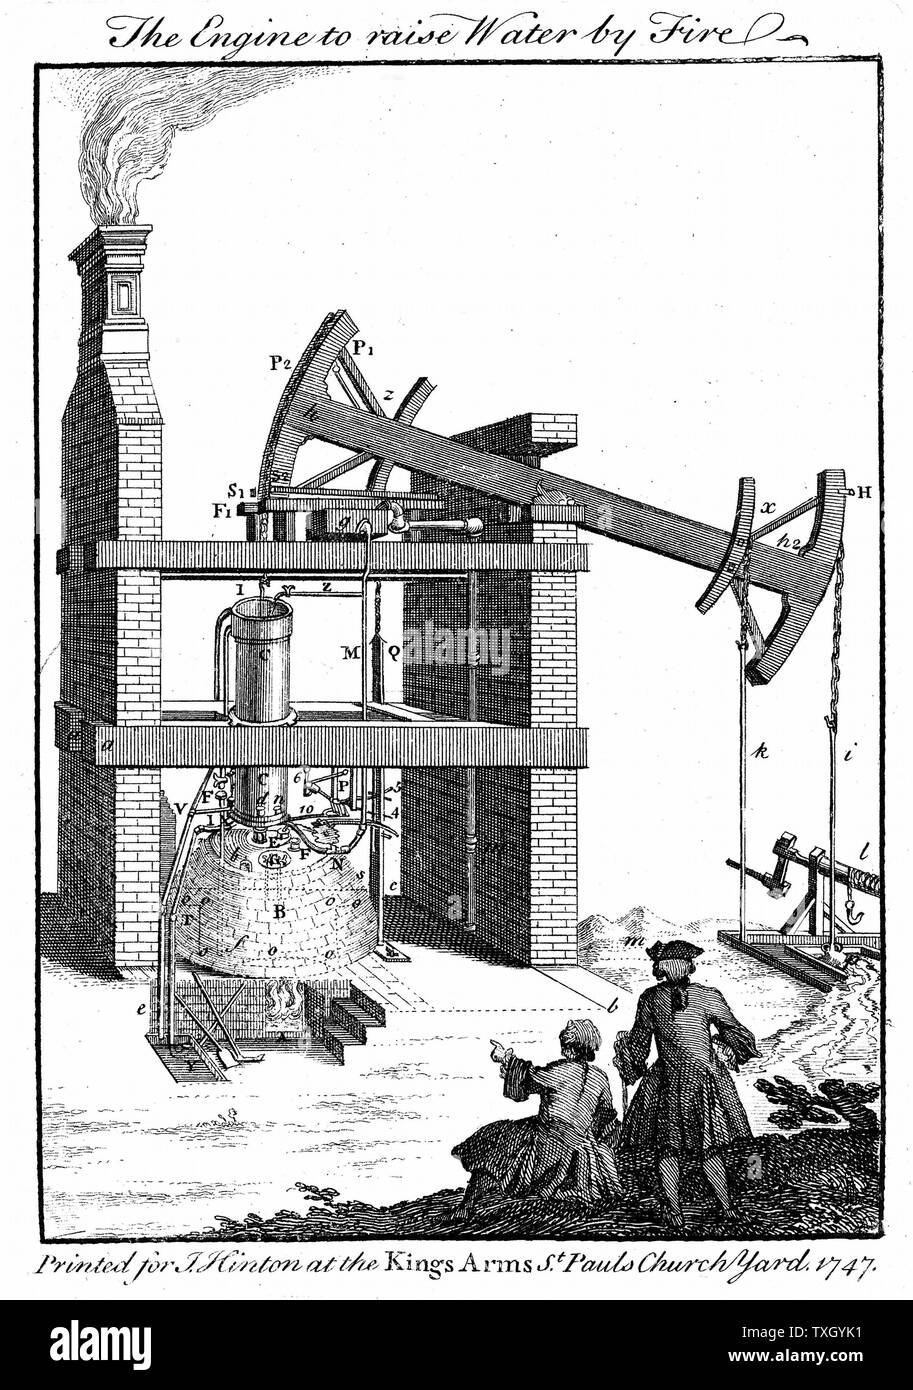 Newcomen Dampfmaschine. Von der "universellen Magazin "London 1747, auf beighton von 1717 Gravur des Motors an den Griff Mine in der Nähe von Nuneaton, Warwickshire, England gegründet. Kupferstich Stockfoto